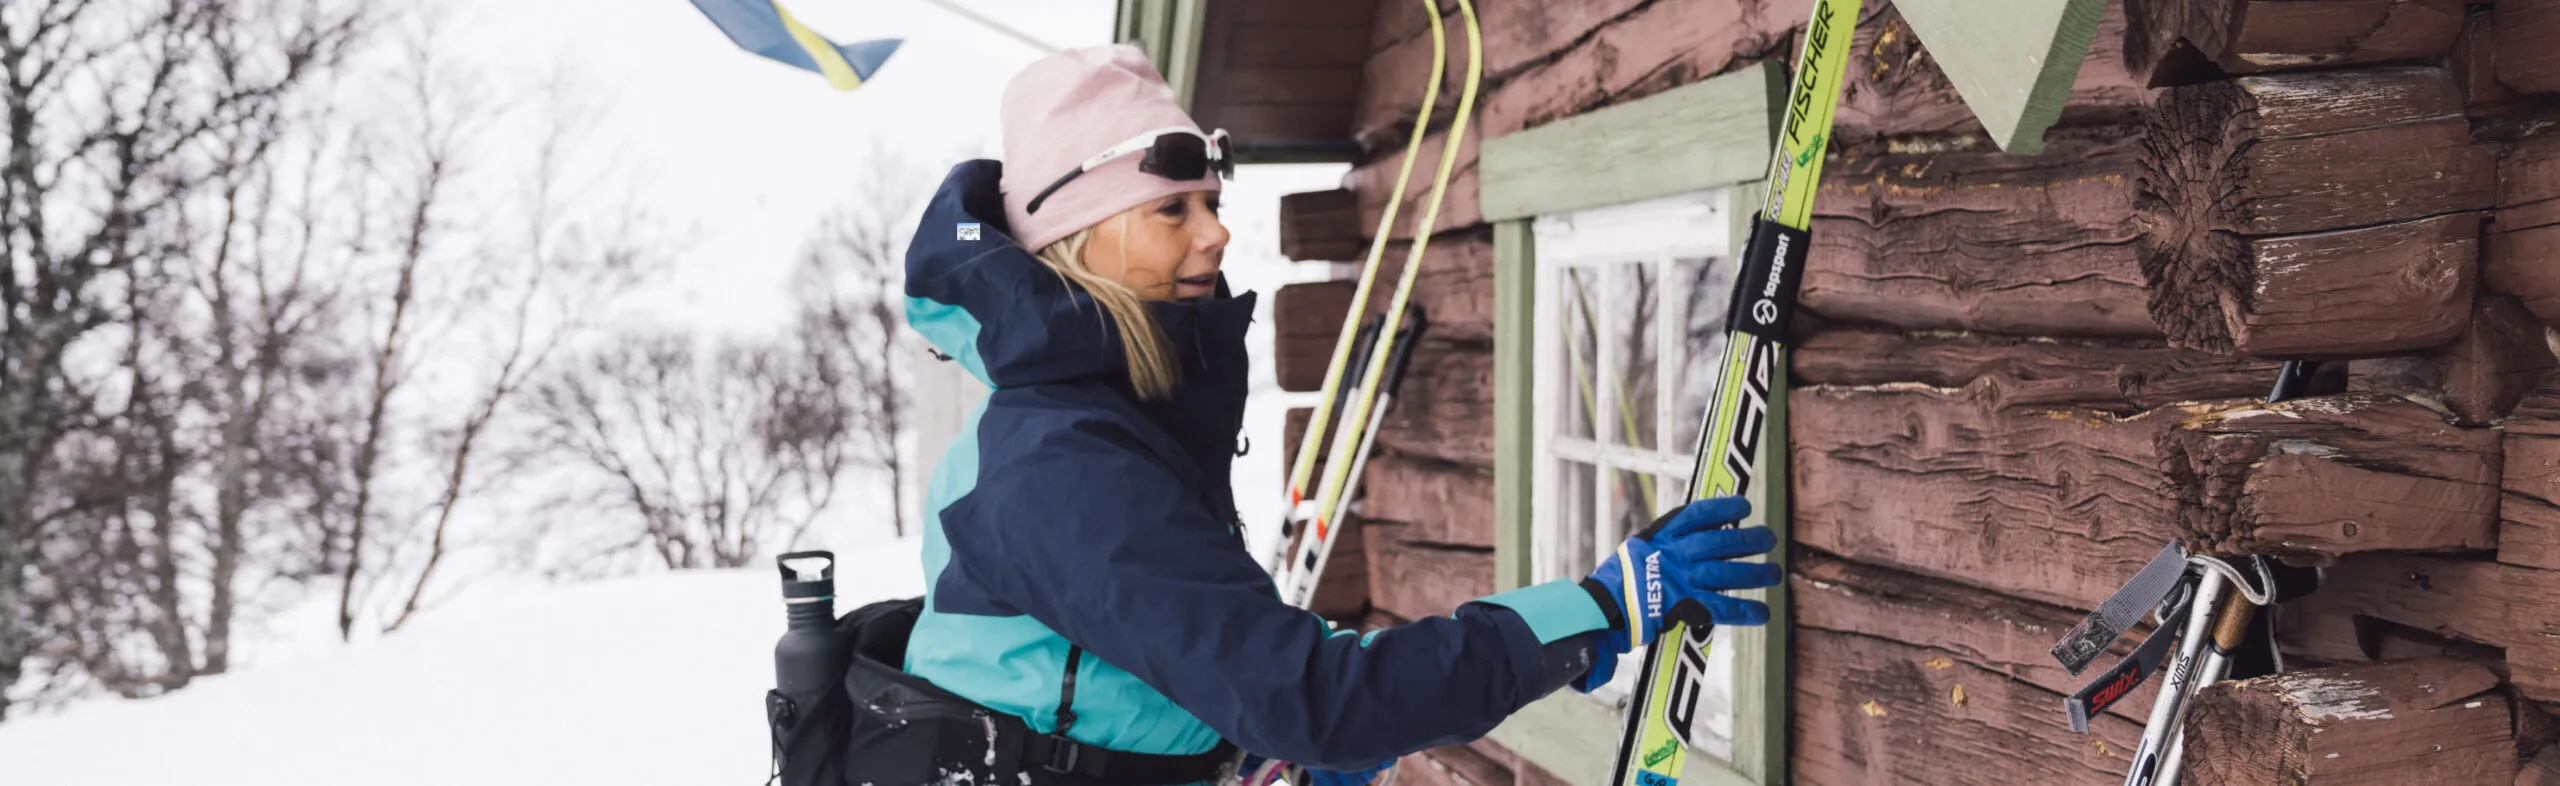 Kvinna åker plockar upp sina skidor i vintermiljö